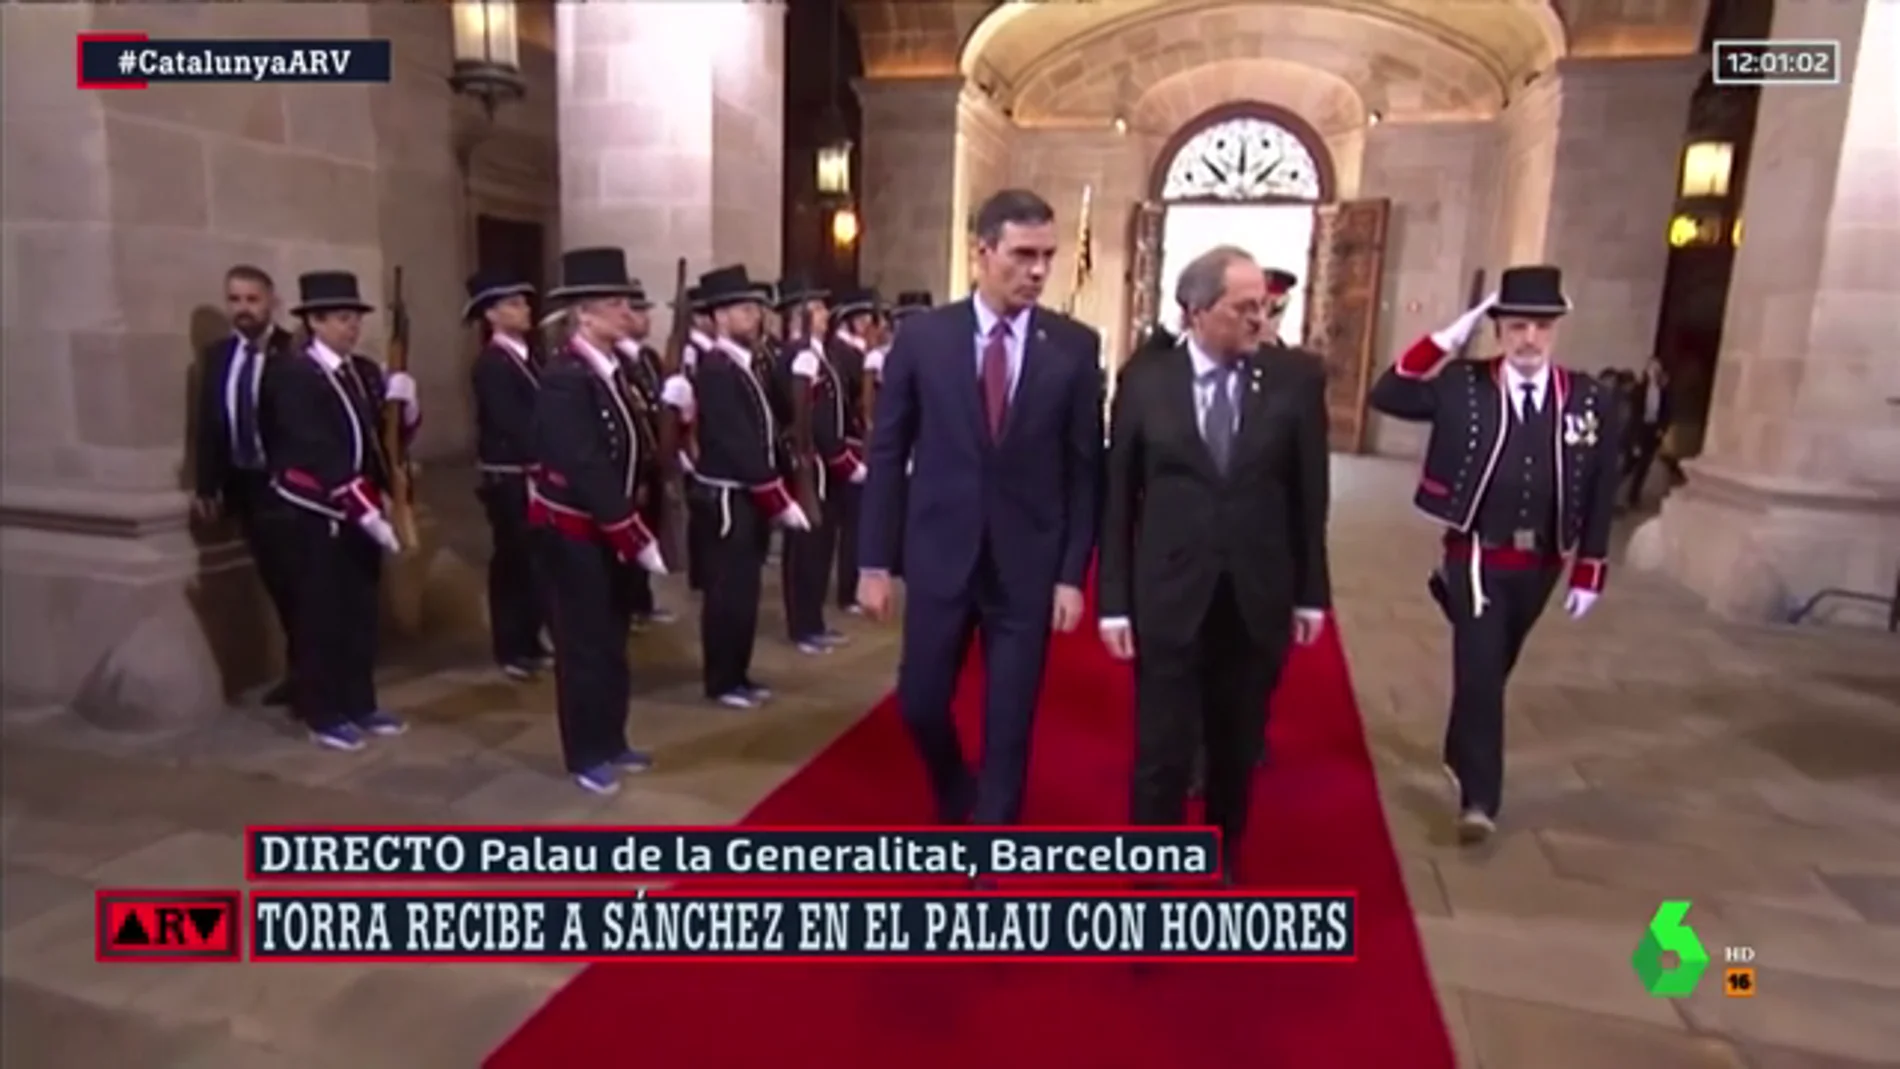 Quim Torra recibe a Pedro Sánchez en el Palau de la Generalitat en un acto con honores de Estado